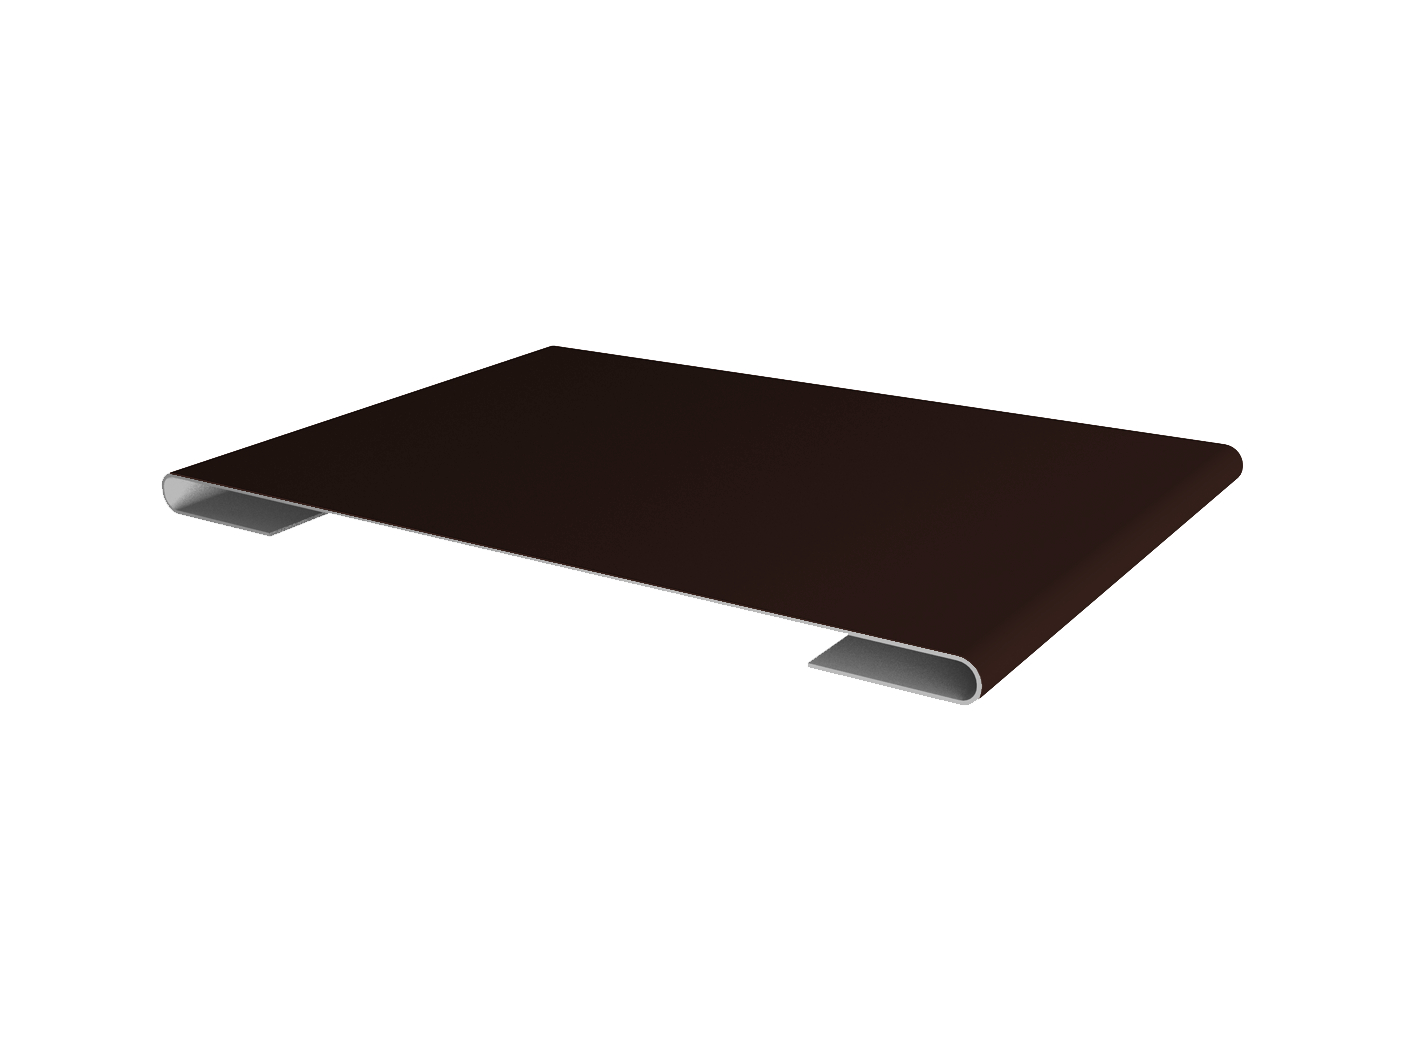 Планка стыковочная простая 60мм GreenCoat Pural с пленкой RR 887 шоколадно-коричневый (RAL 8017 шоколад)